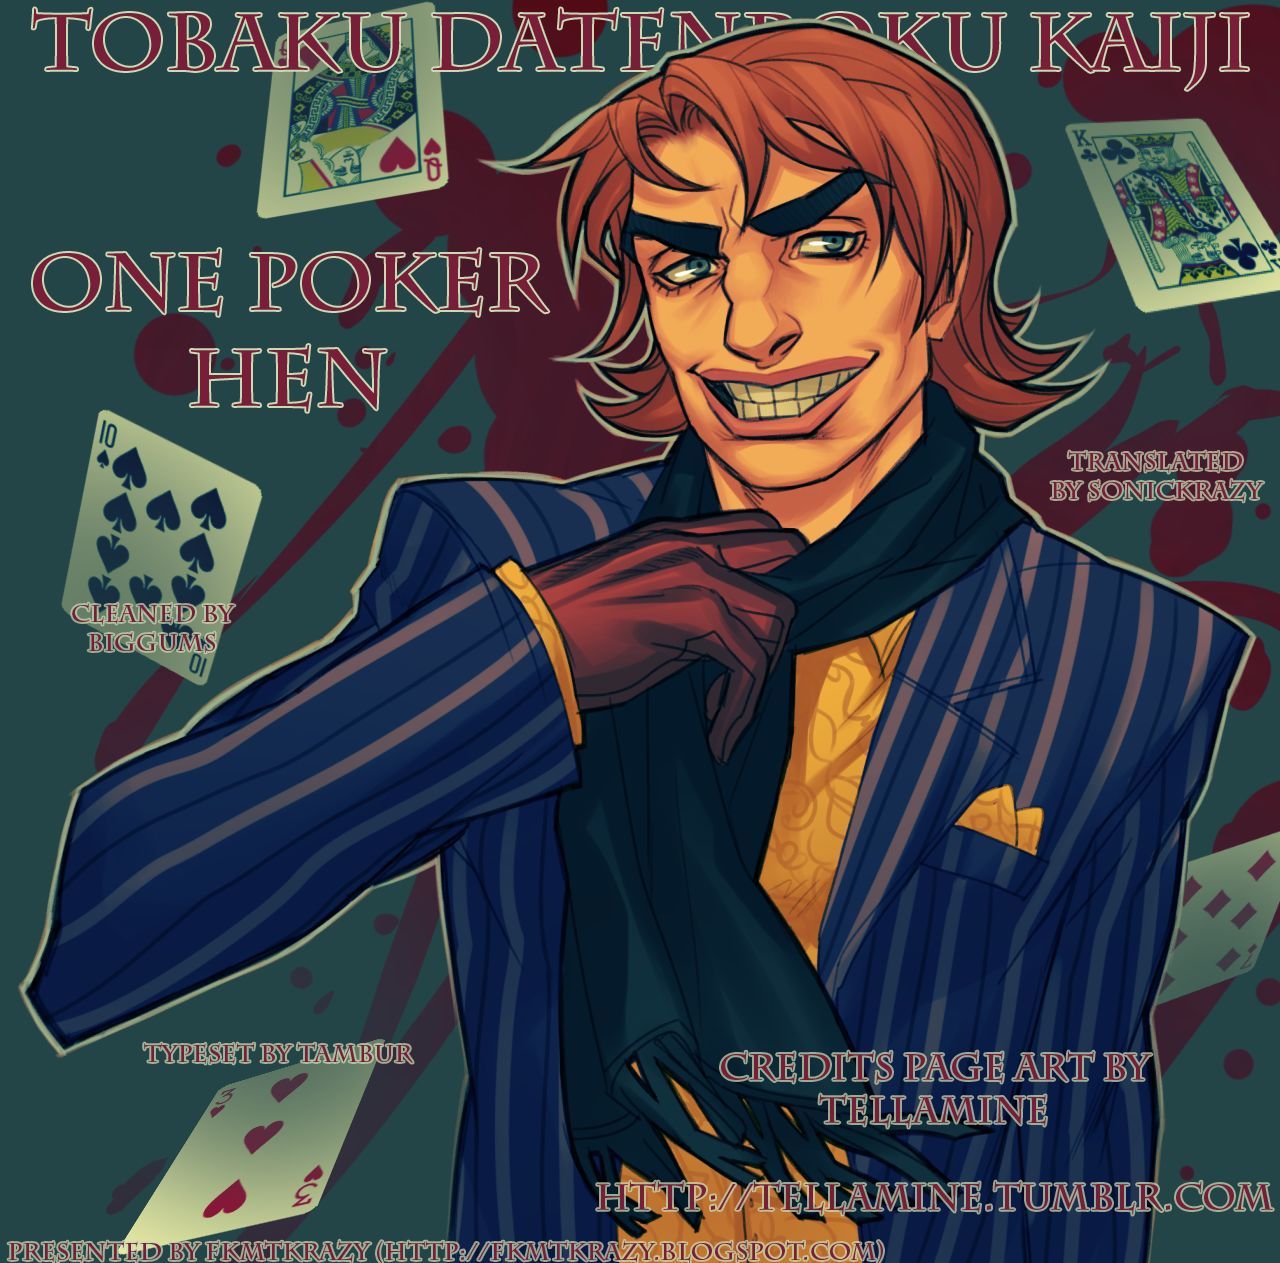 Tobaku Datenroku Kaiji - One Poker Hen 180